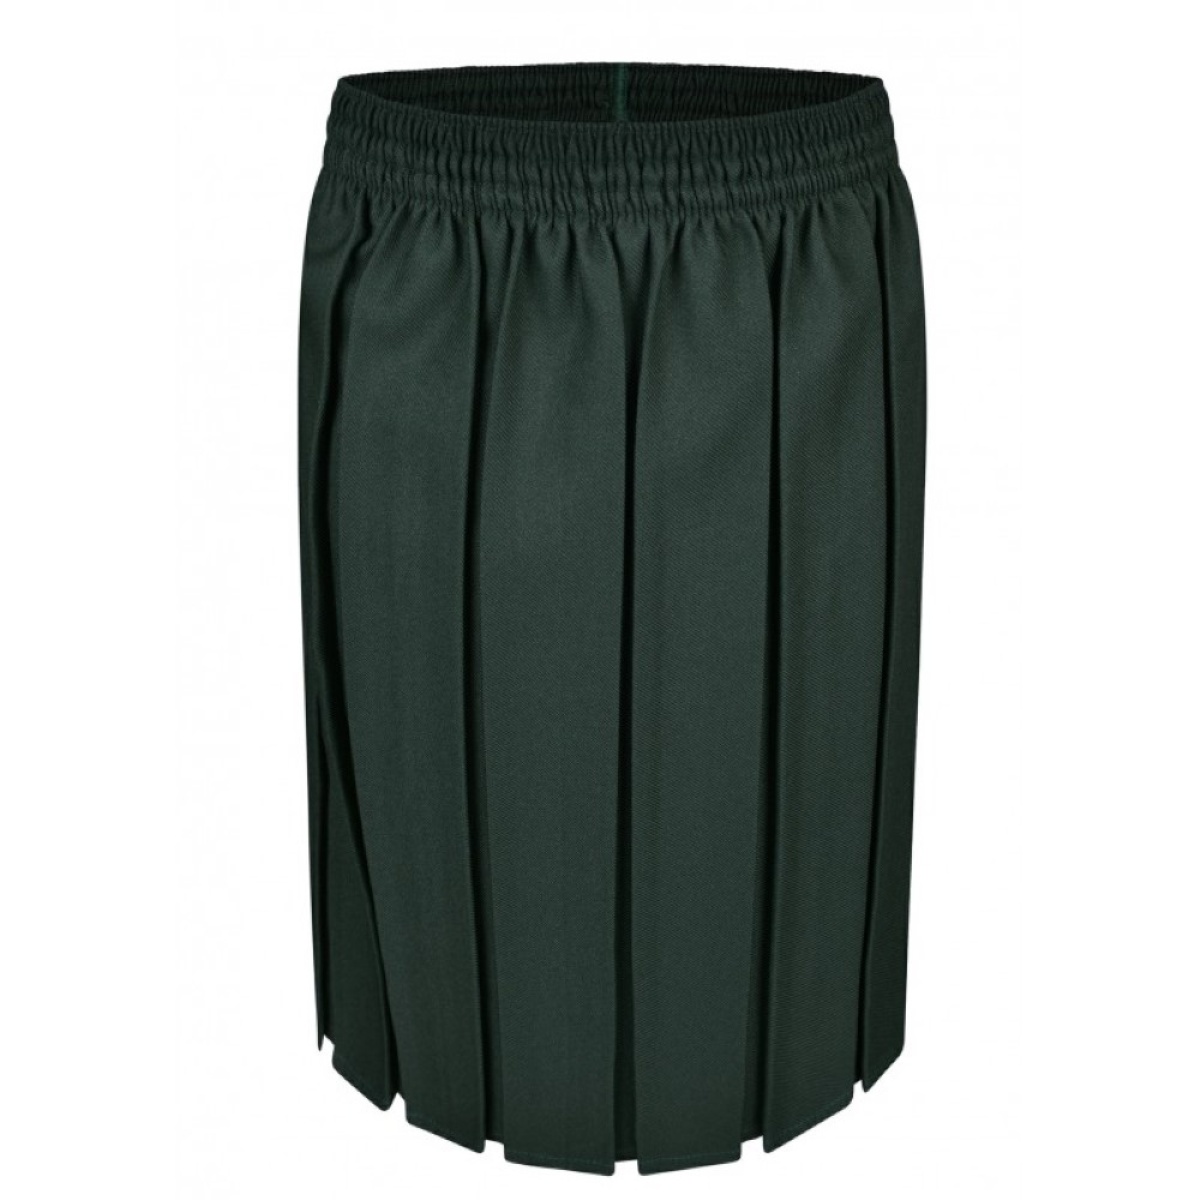 Box Pleat Skirt - Bottle Green - Innovation, Skirts & Dresses